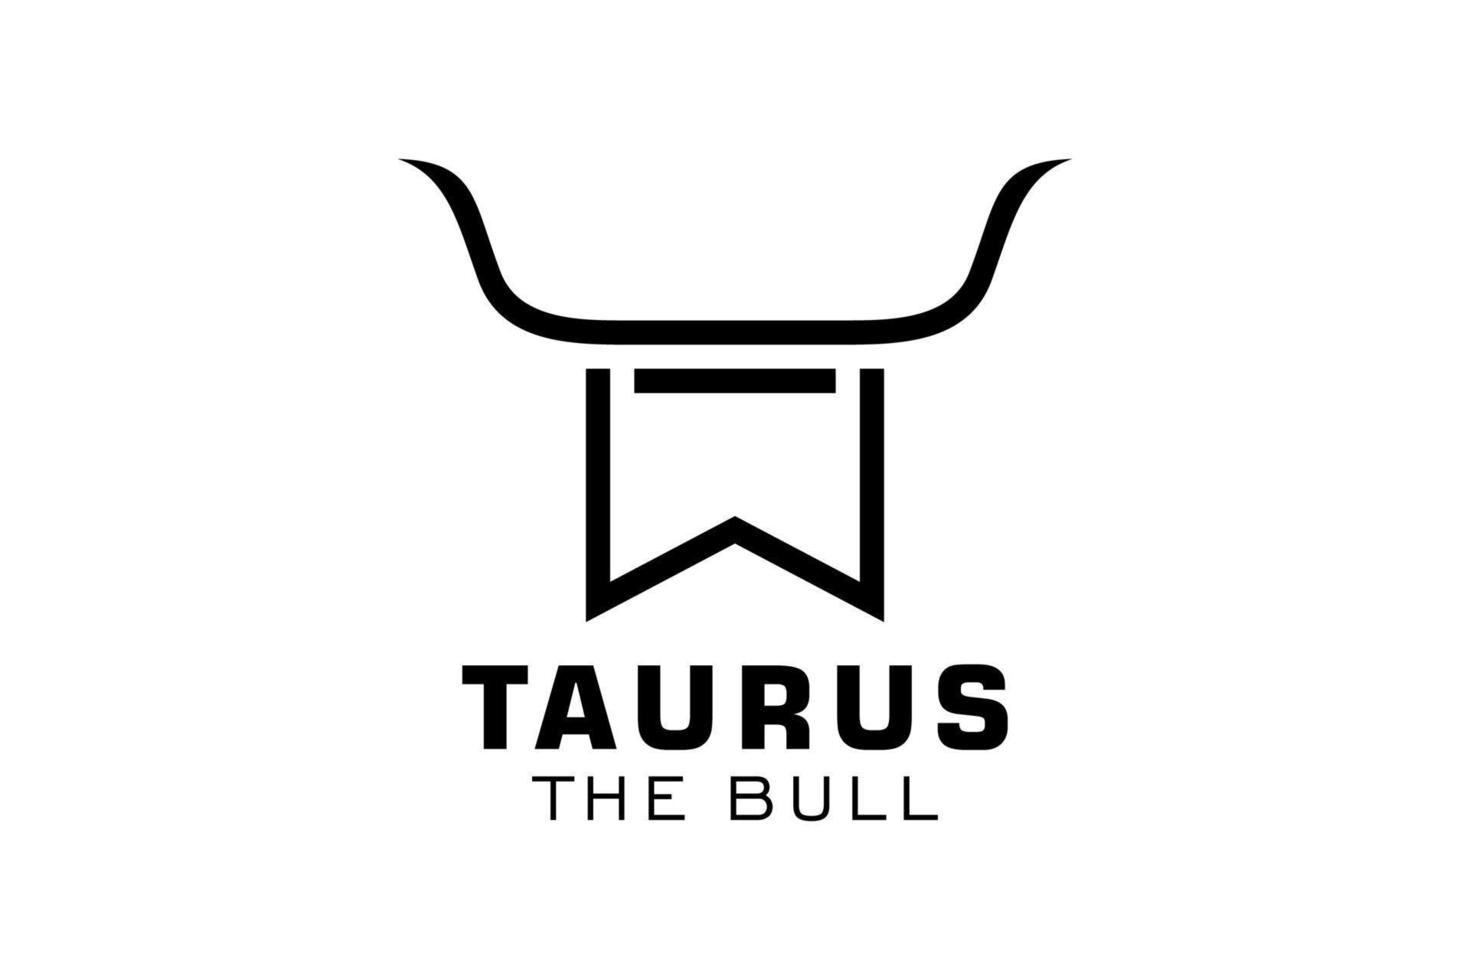 logotipo da letra w, logotipo do touro, logotipo da cabeça do touro, elemento de modelo de design do logotipo do monograma vetor